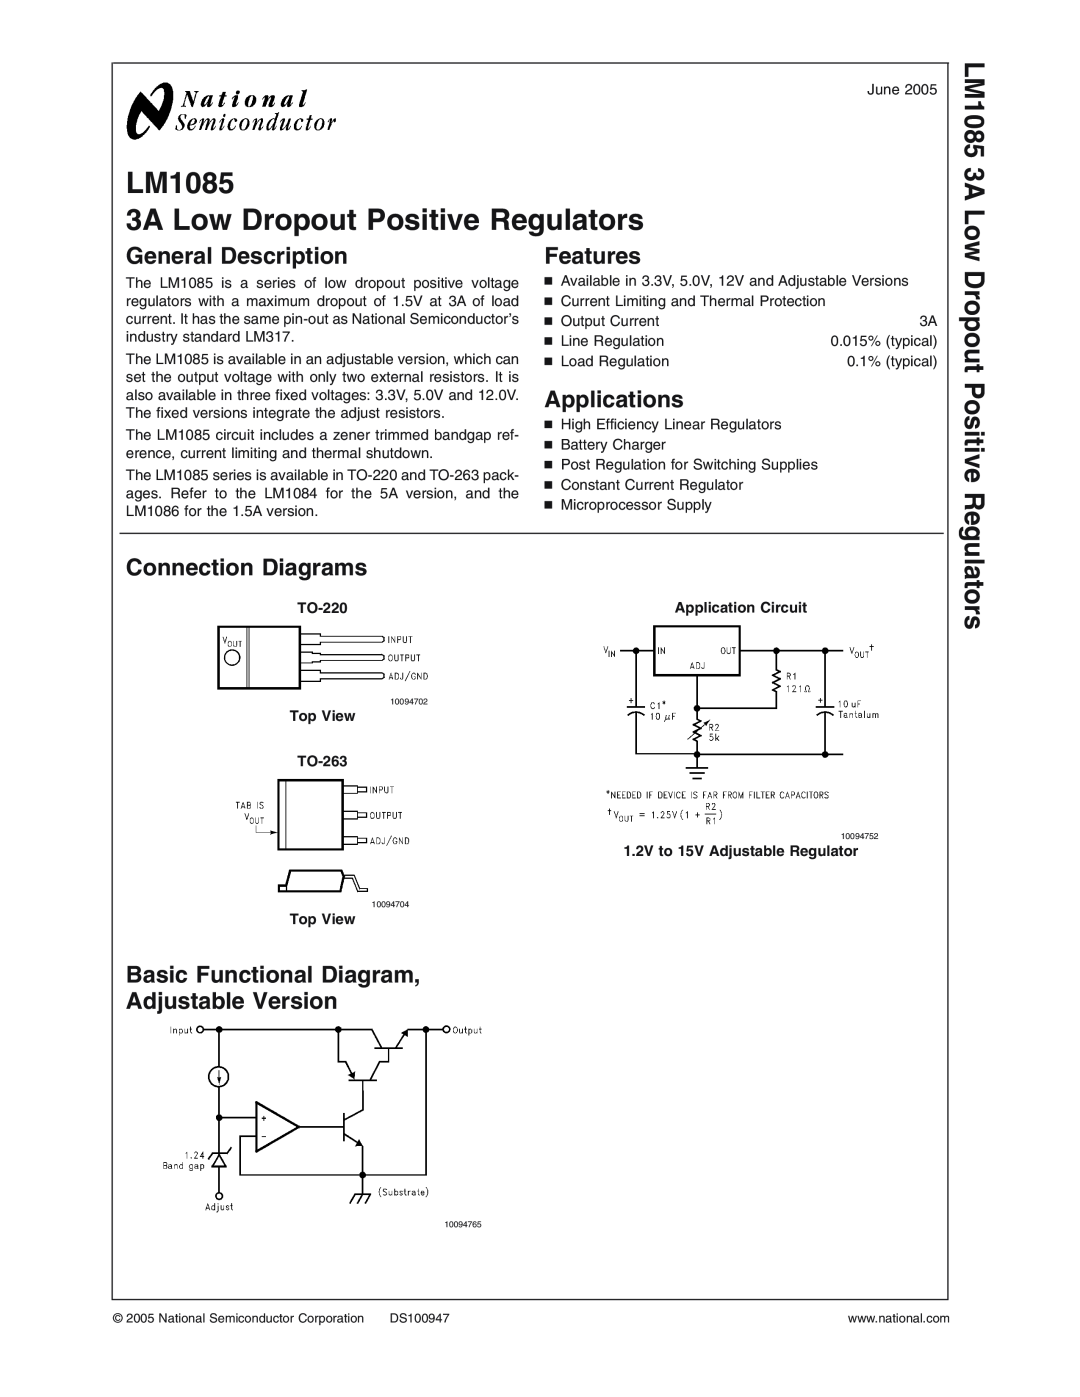 National Instruments LM1085 Series manual Dropout Positive, Regulators, LM1085 3A Low, General Description, Features 